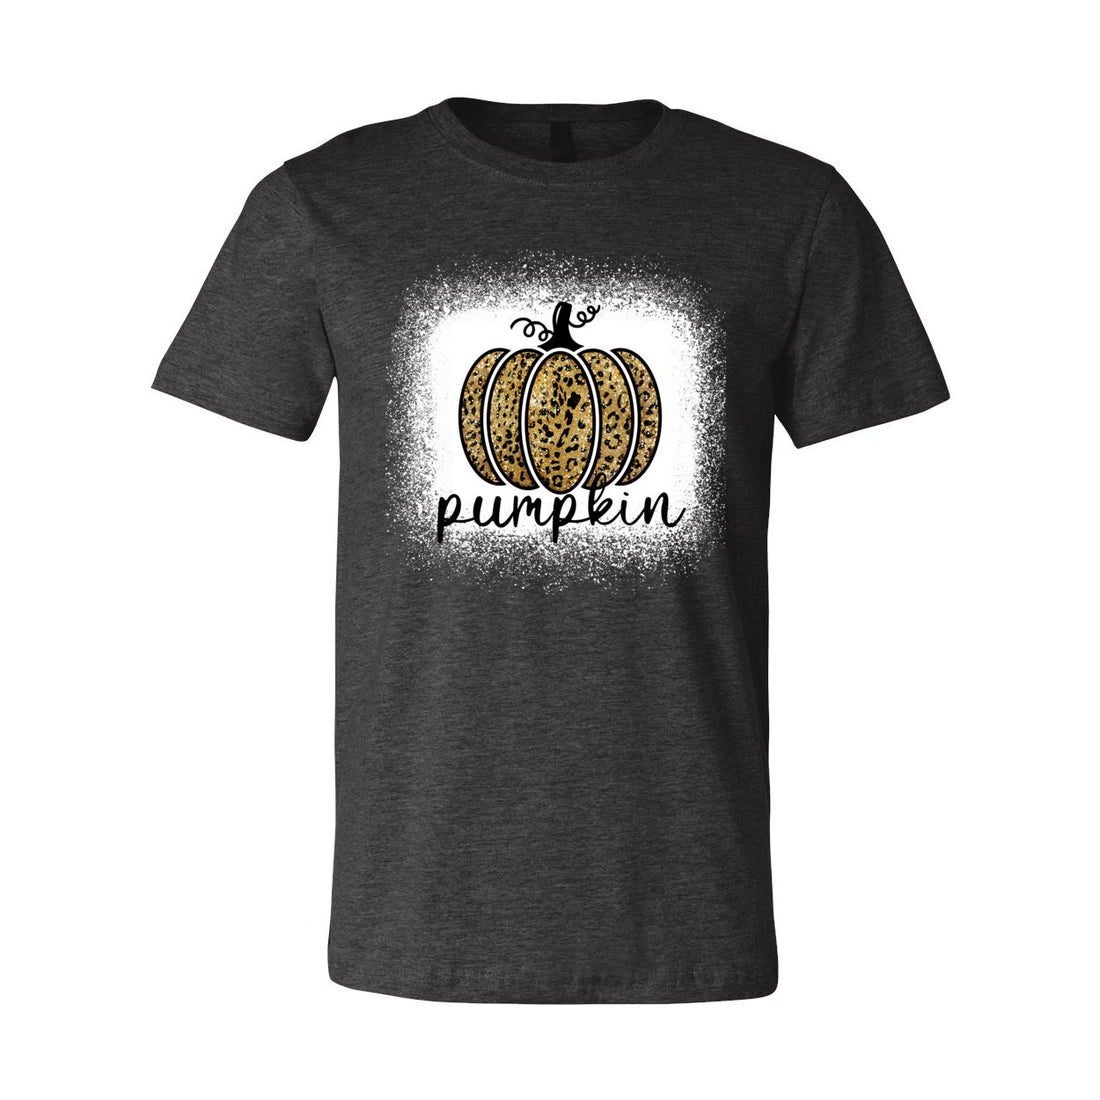 Pumpkin - T-Shirts - Positively Sassy - Pumpkin